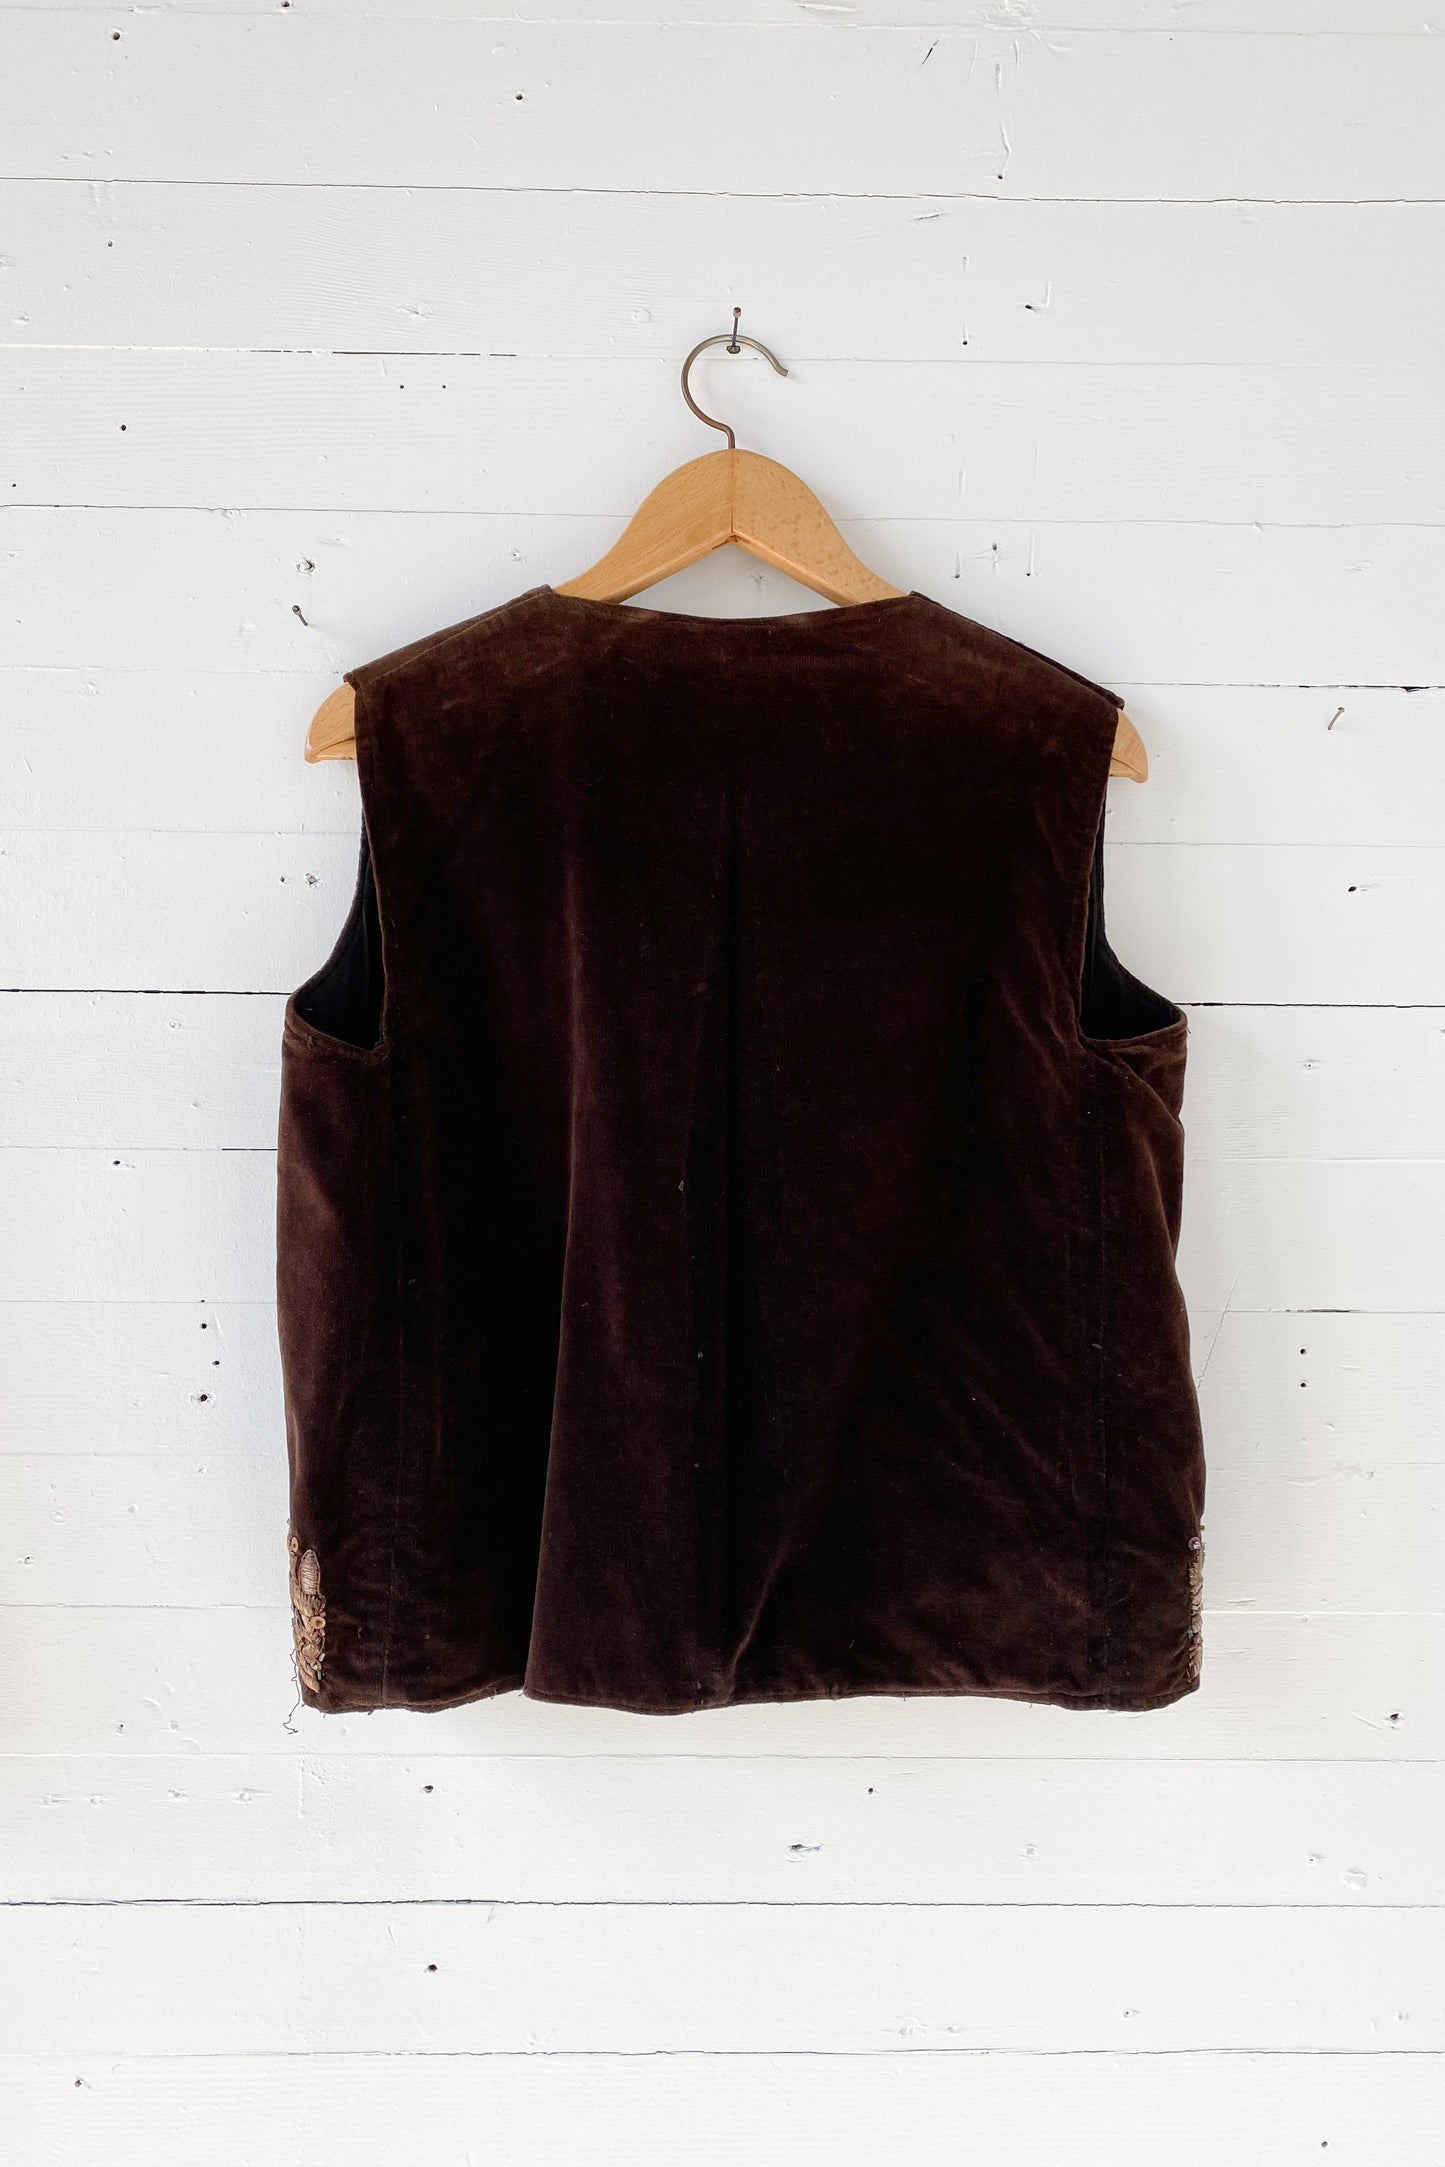 Embroidered Brown Velvet Vest